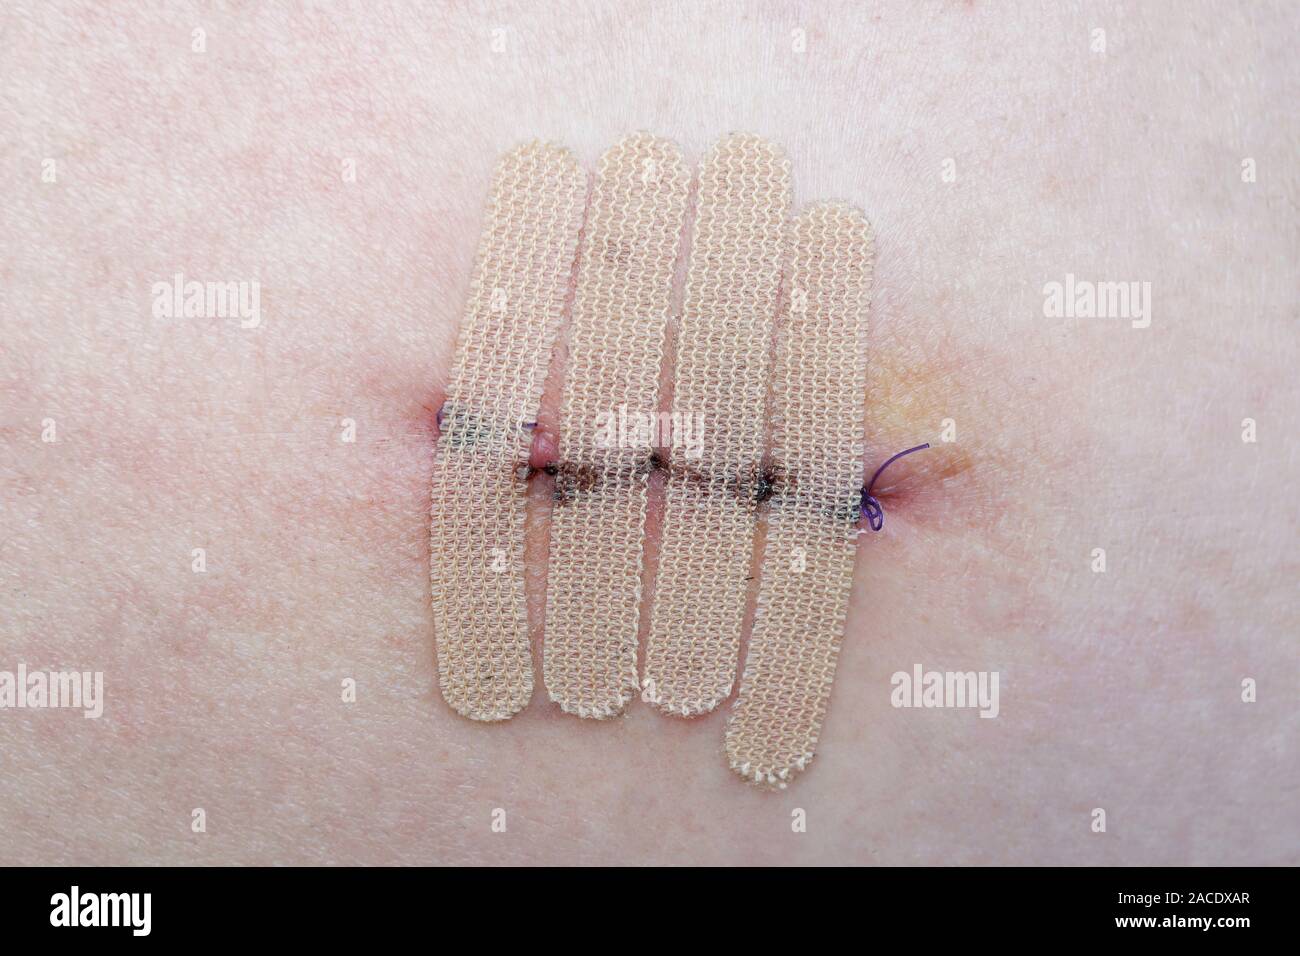 Nahaufnahme der menschlichen Haut mit Naht und den Wundverschluss Streifen oder chirurgischen Band nach Mole oder Melanom Biopsie Stockfoto